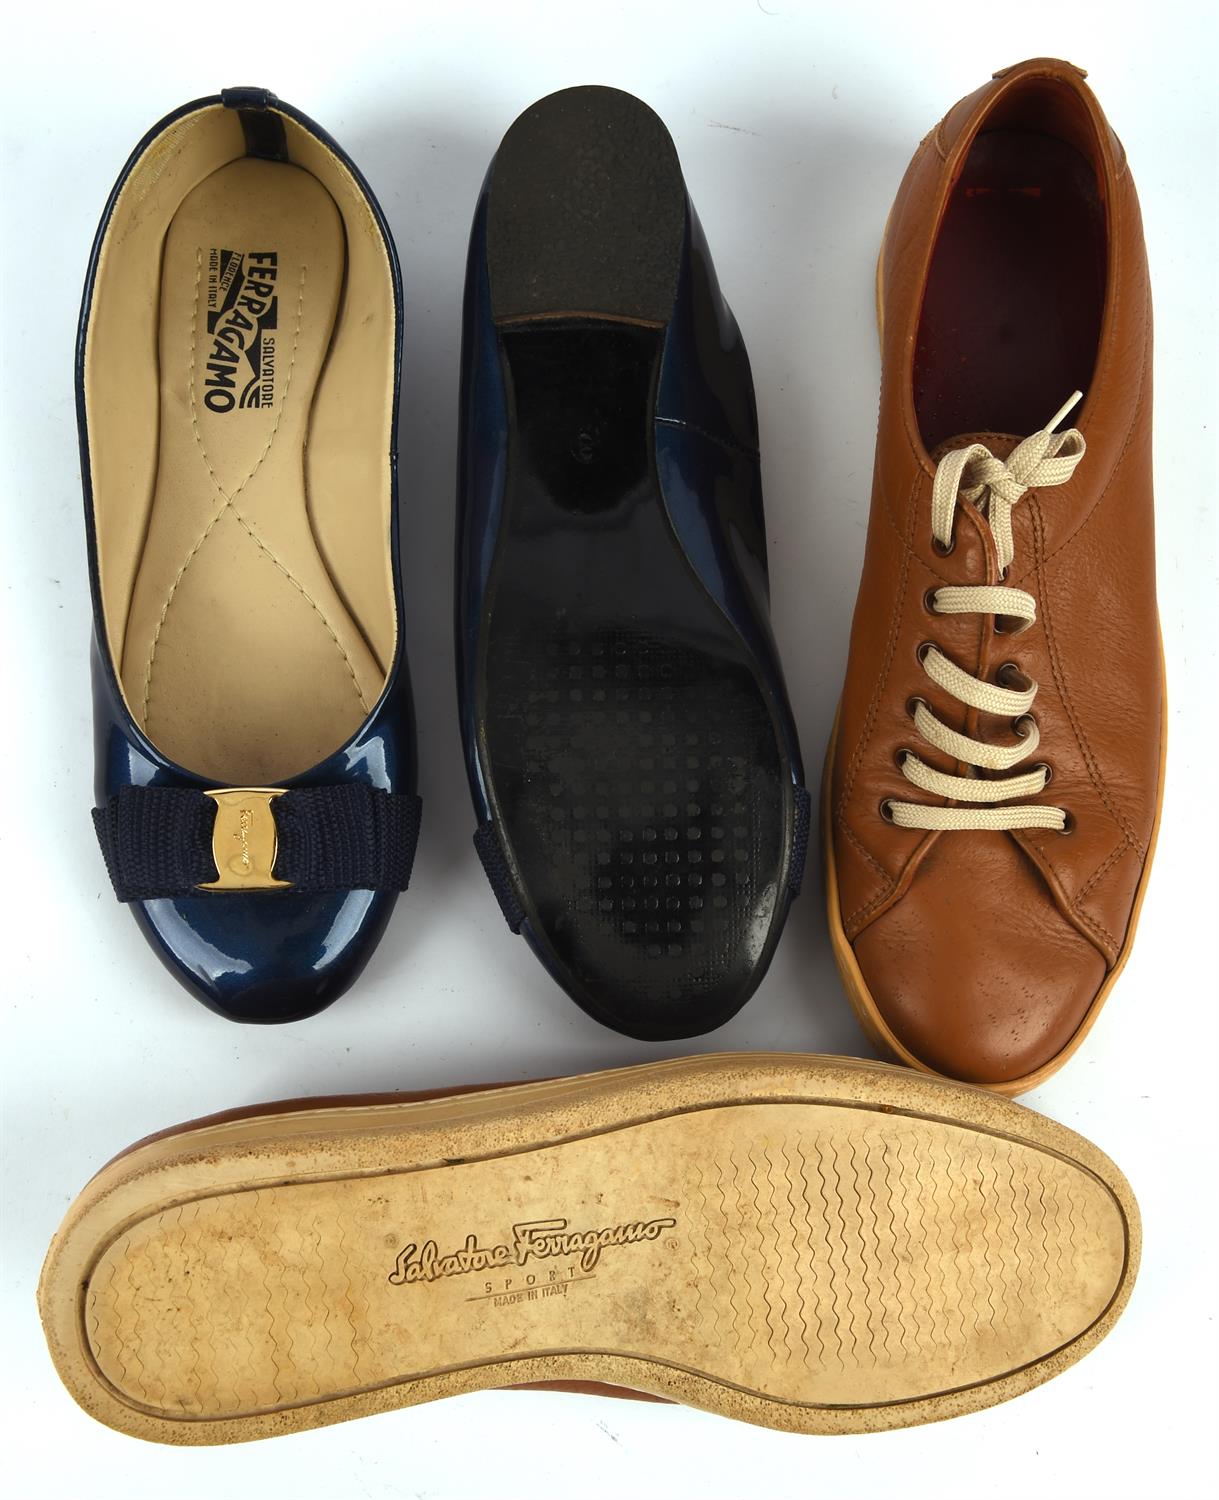 SALVATORRE FERRAGAMO four pairs of ladies 1990s vintage shoes - black patent court shoes, - Image 4 of 4